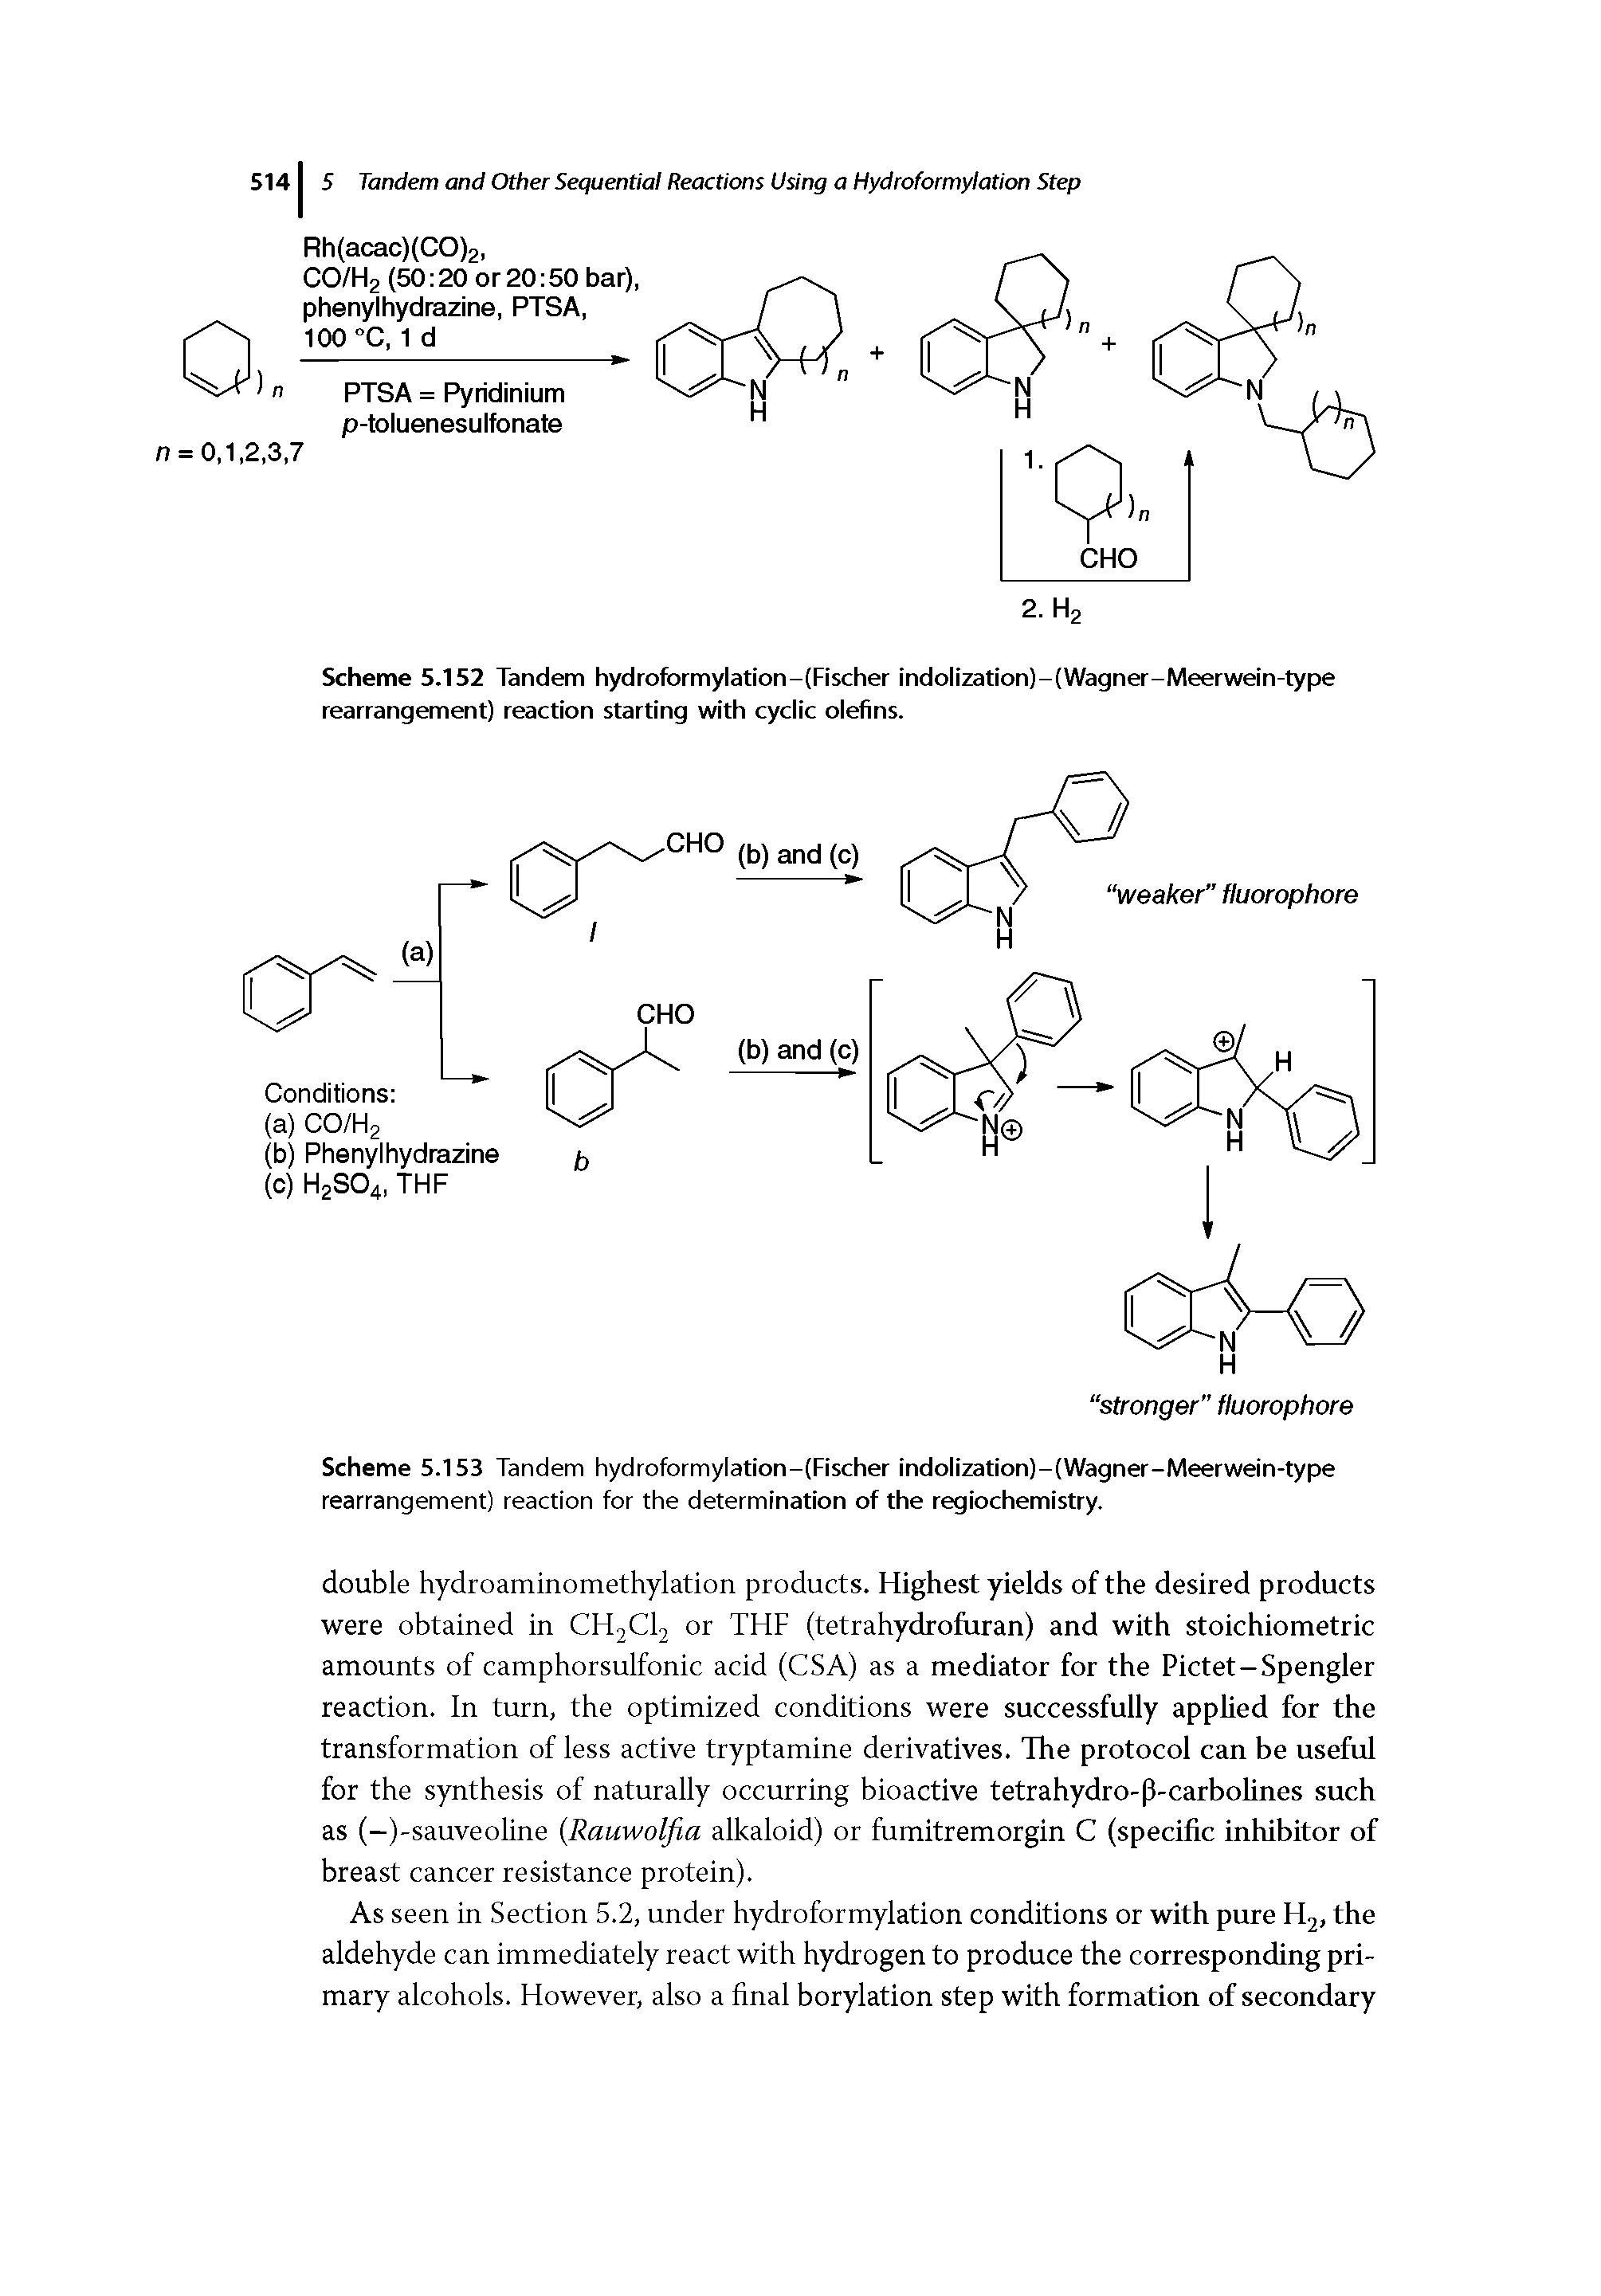 Scheme 5.152 Tandem hydrofbrmylation-(Fischer indolization)-(Wagner-Meerwein-type rearrangement) reaction starting with cyclic olefins.